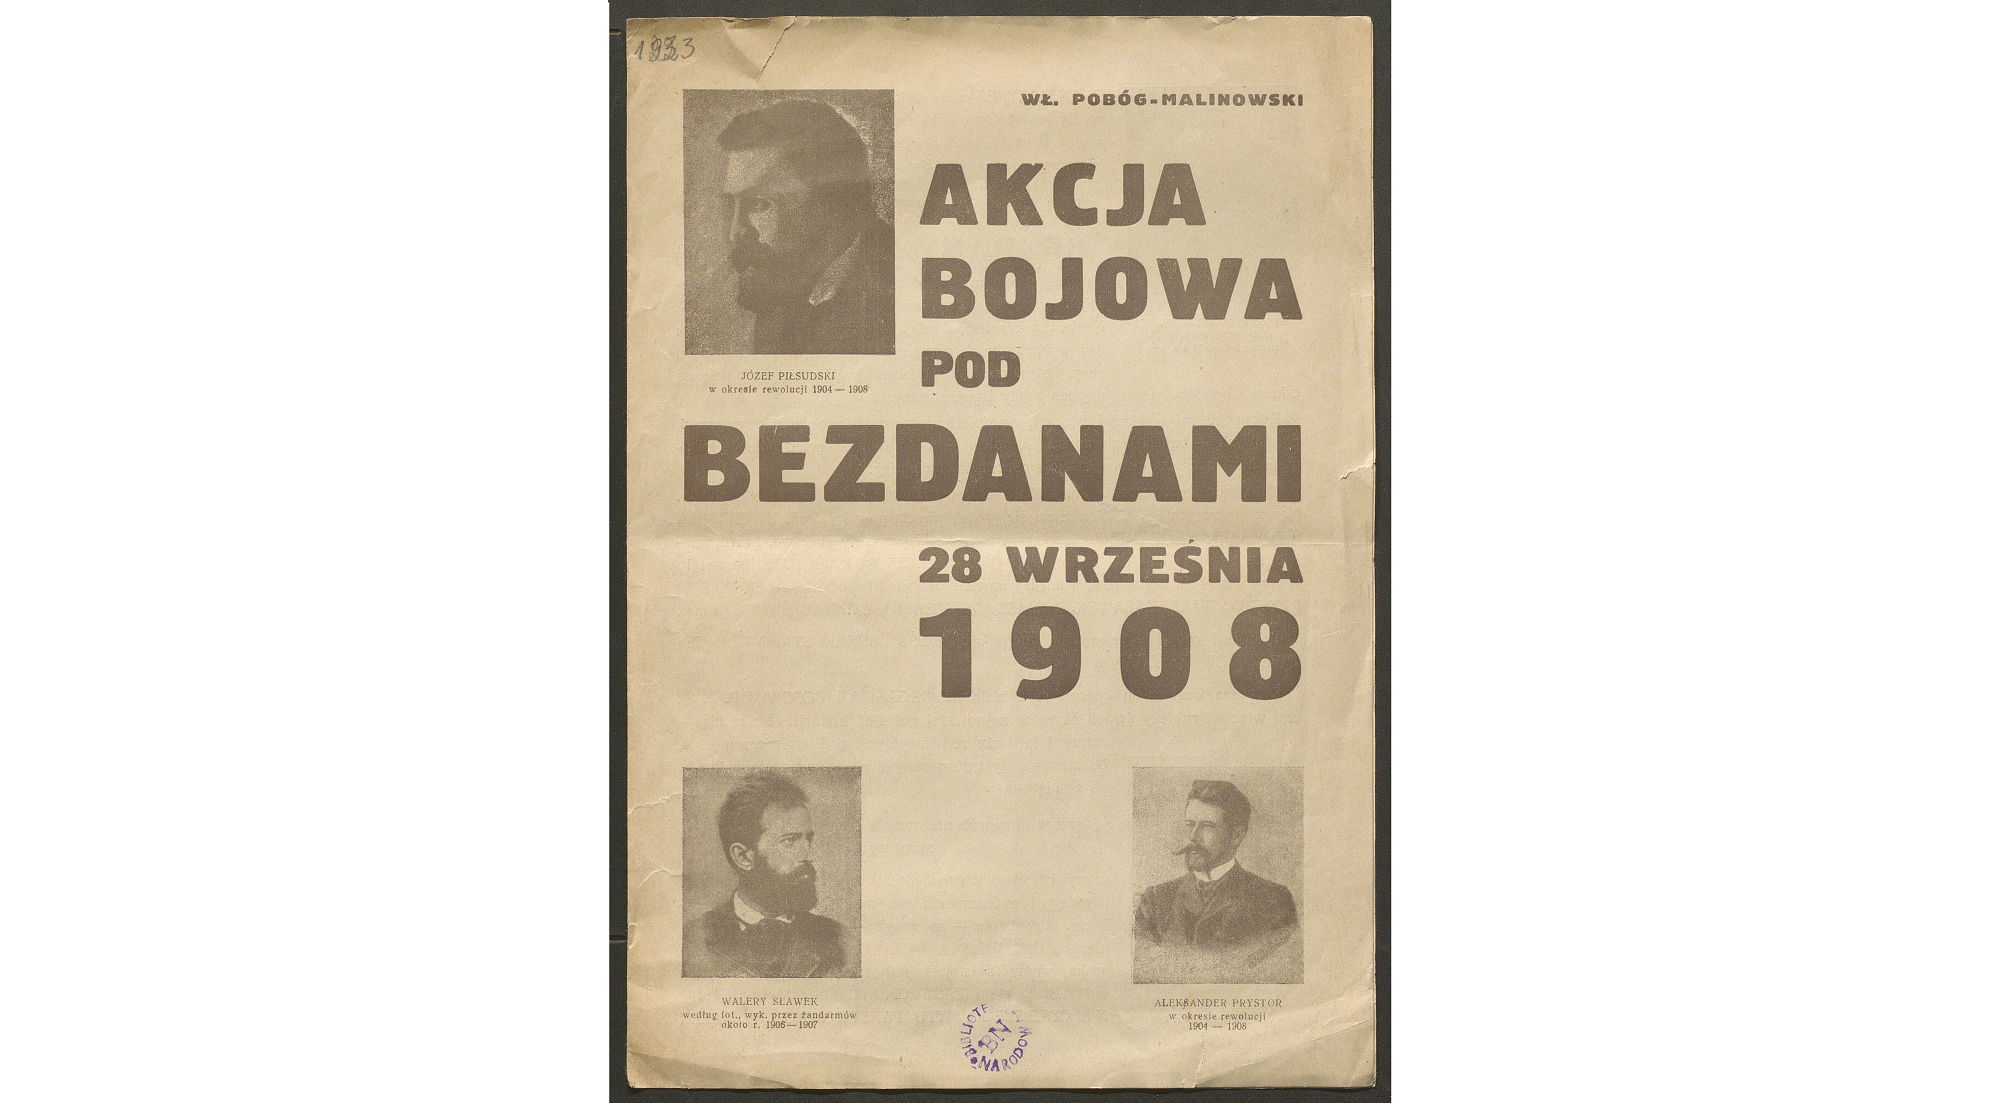 okładka wydawnictwa "Akcja bojowa pod Bezdanami" autorstwa Pobóg-Malinowskiego